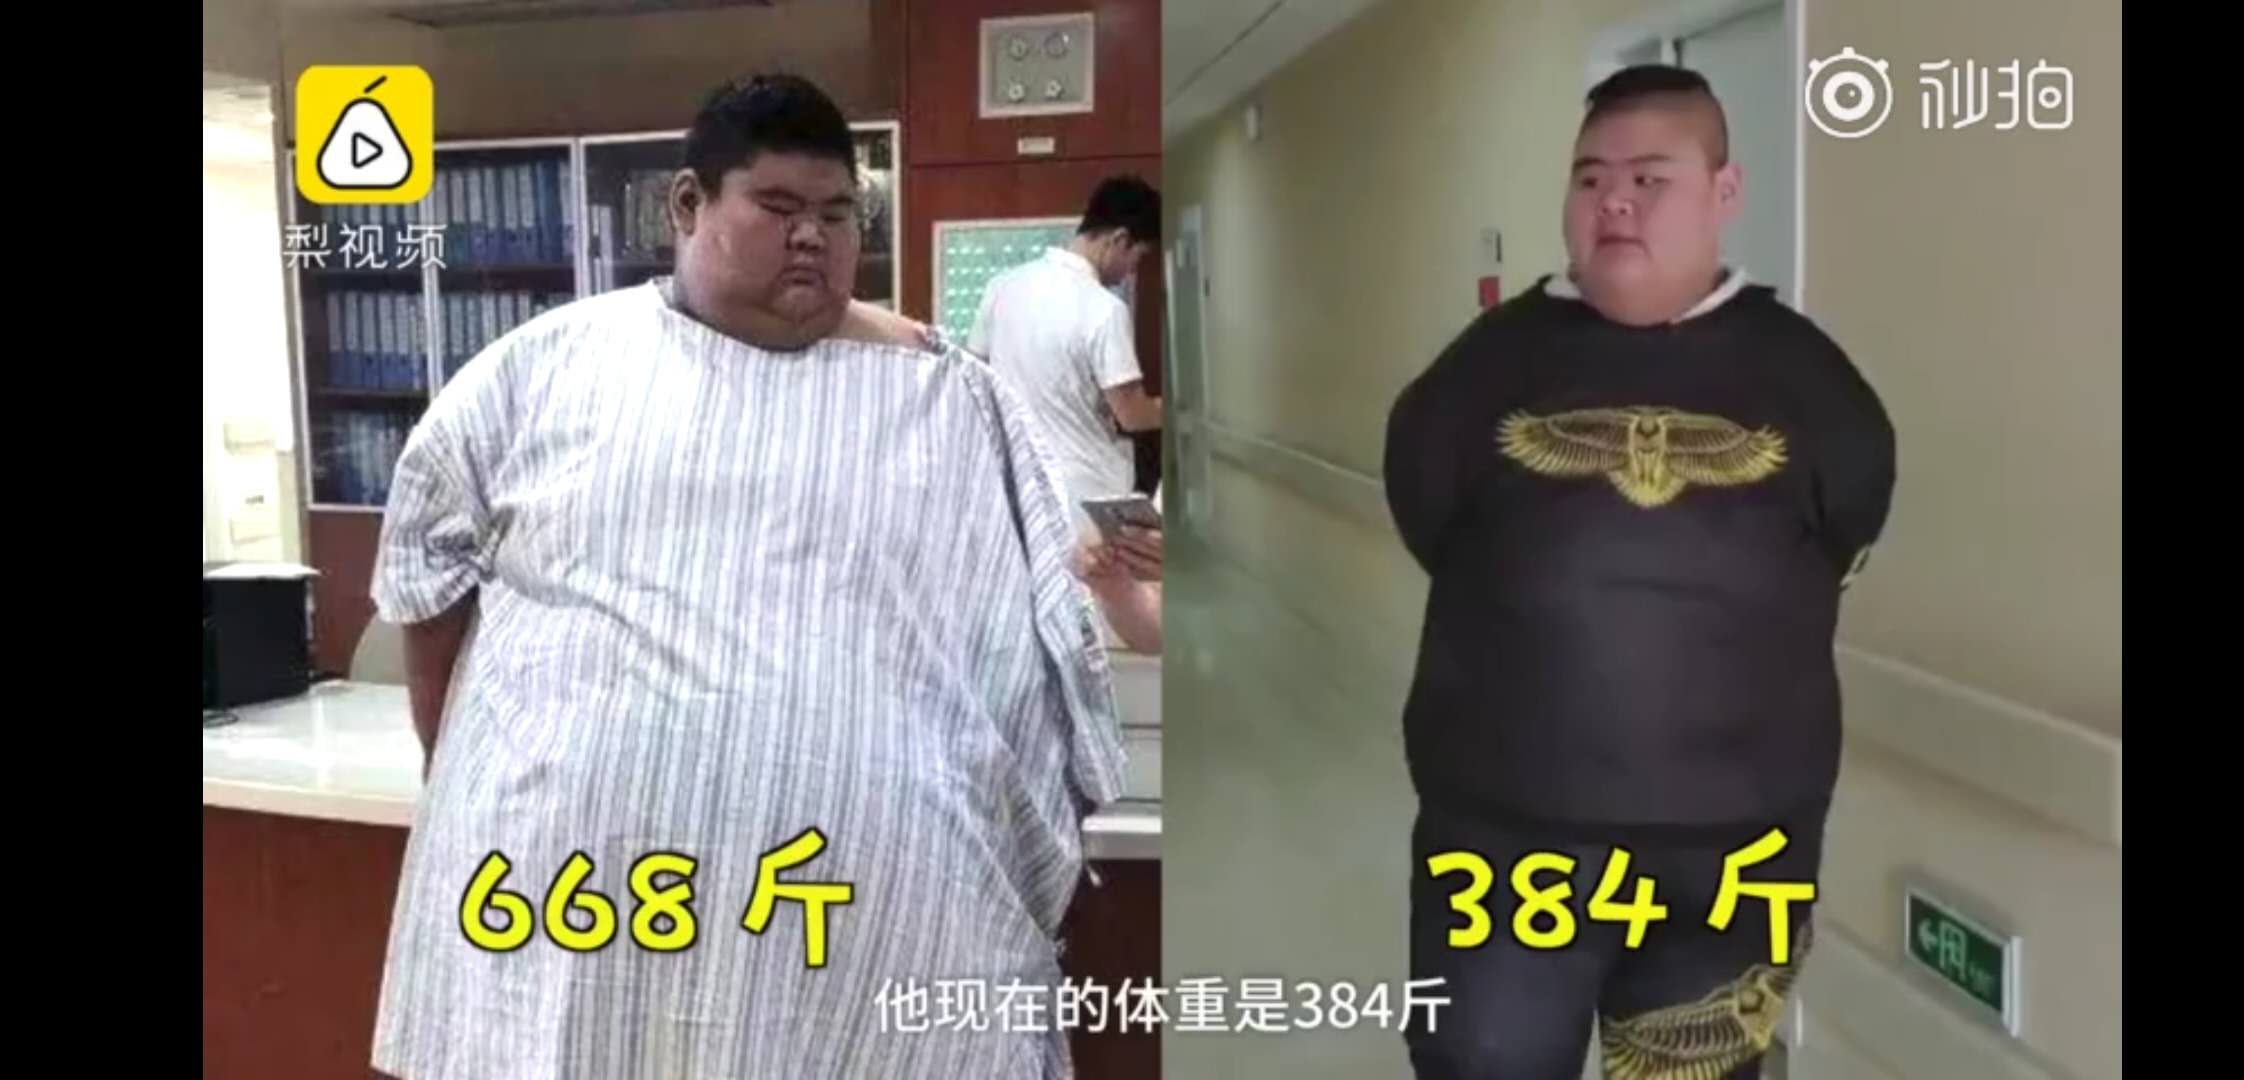 500斤男胖子图片大全,胖子全身 - 伤感说说吧